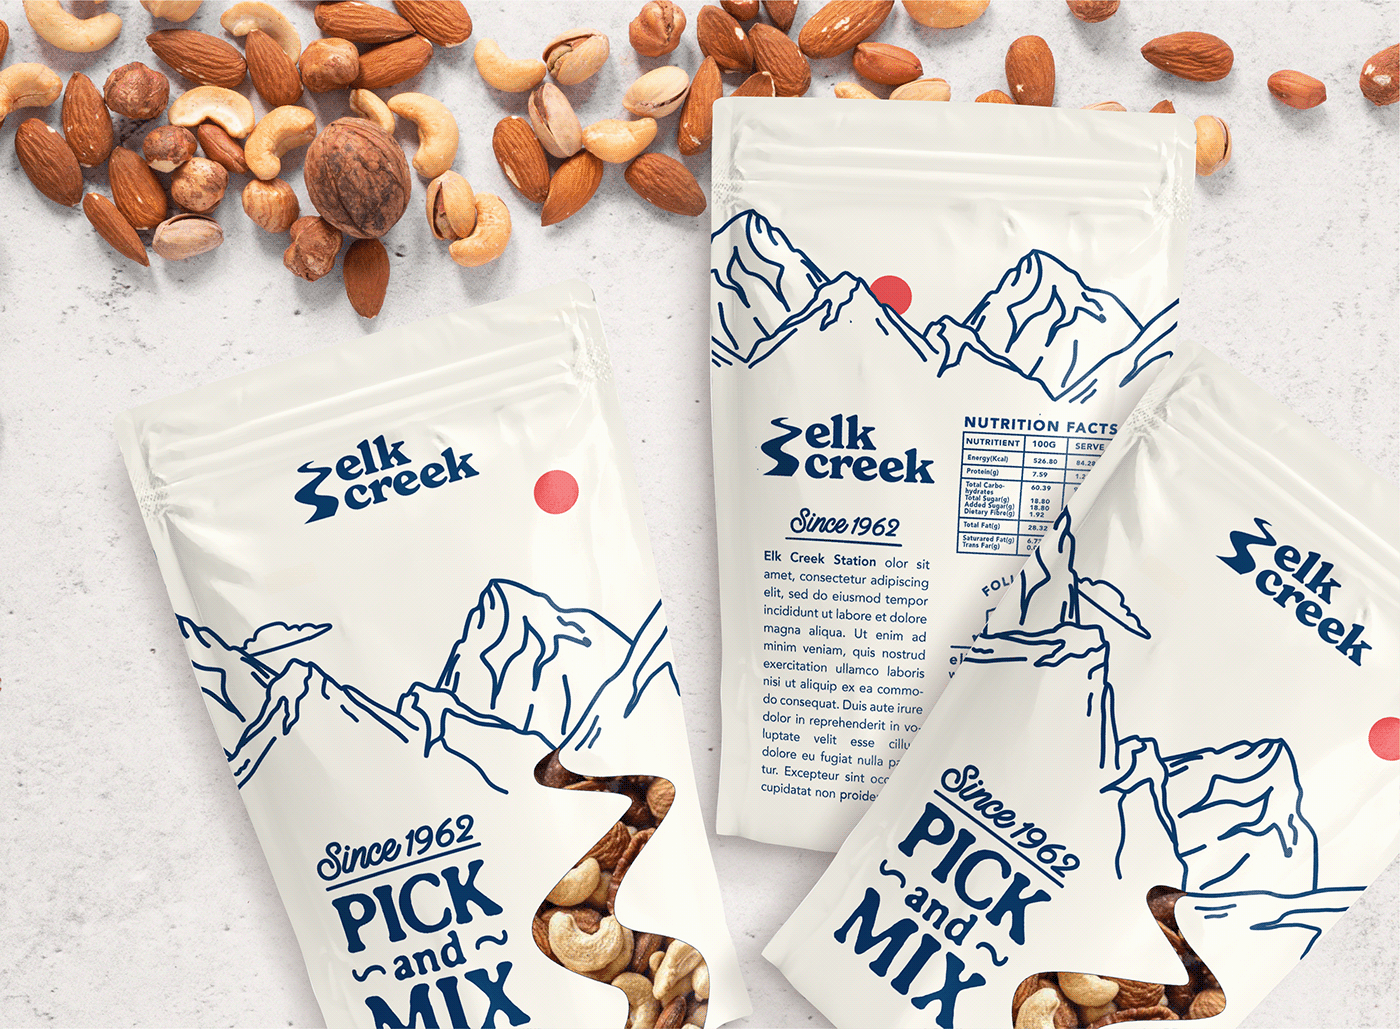 Food Packaging Food Packaging Design healthy food nuts nuts packaging Packaging pouch snack packaging Pouch Packaging